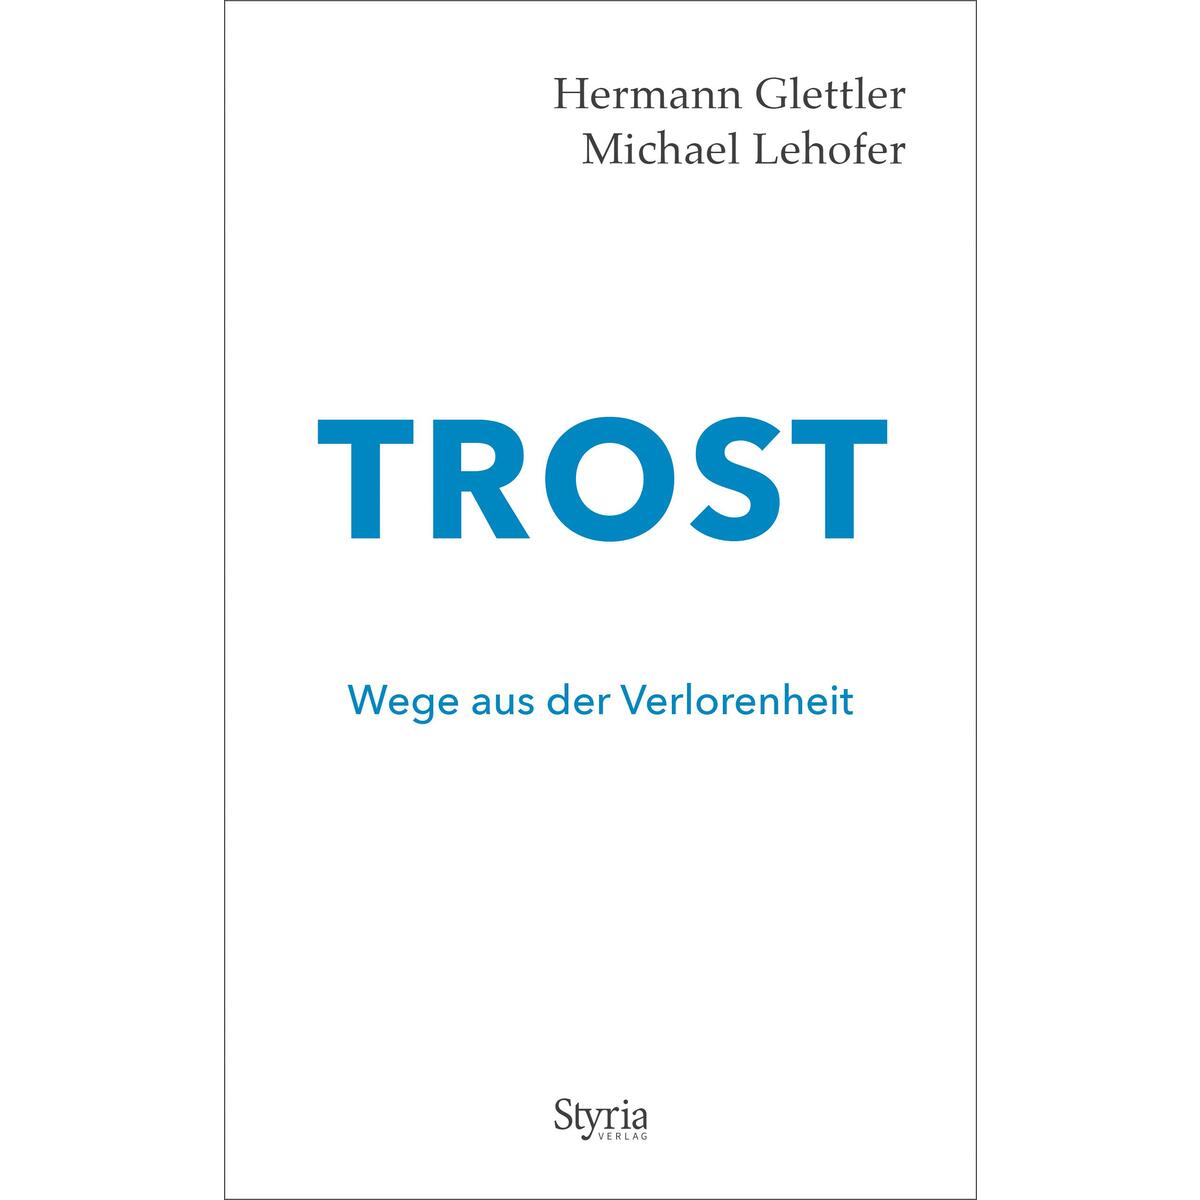 Trost von Styria  Verlag